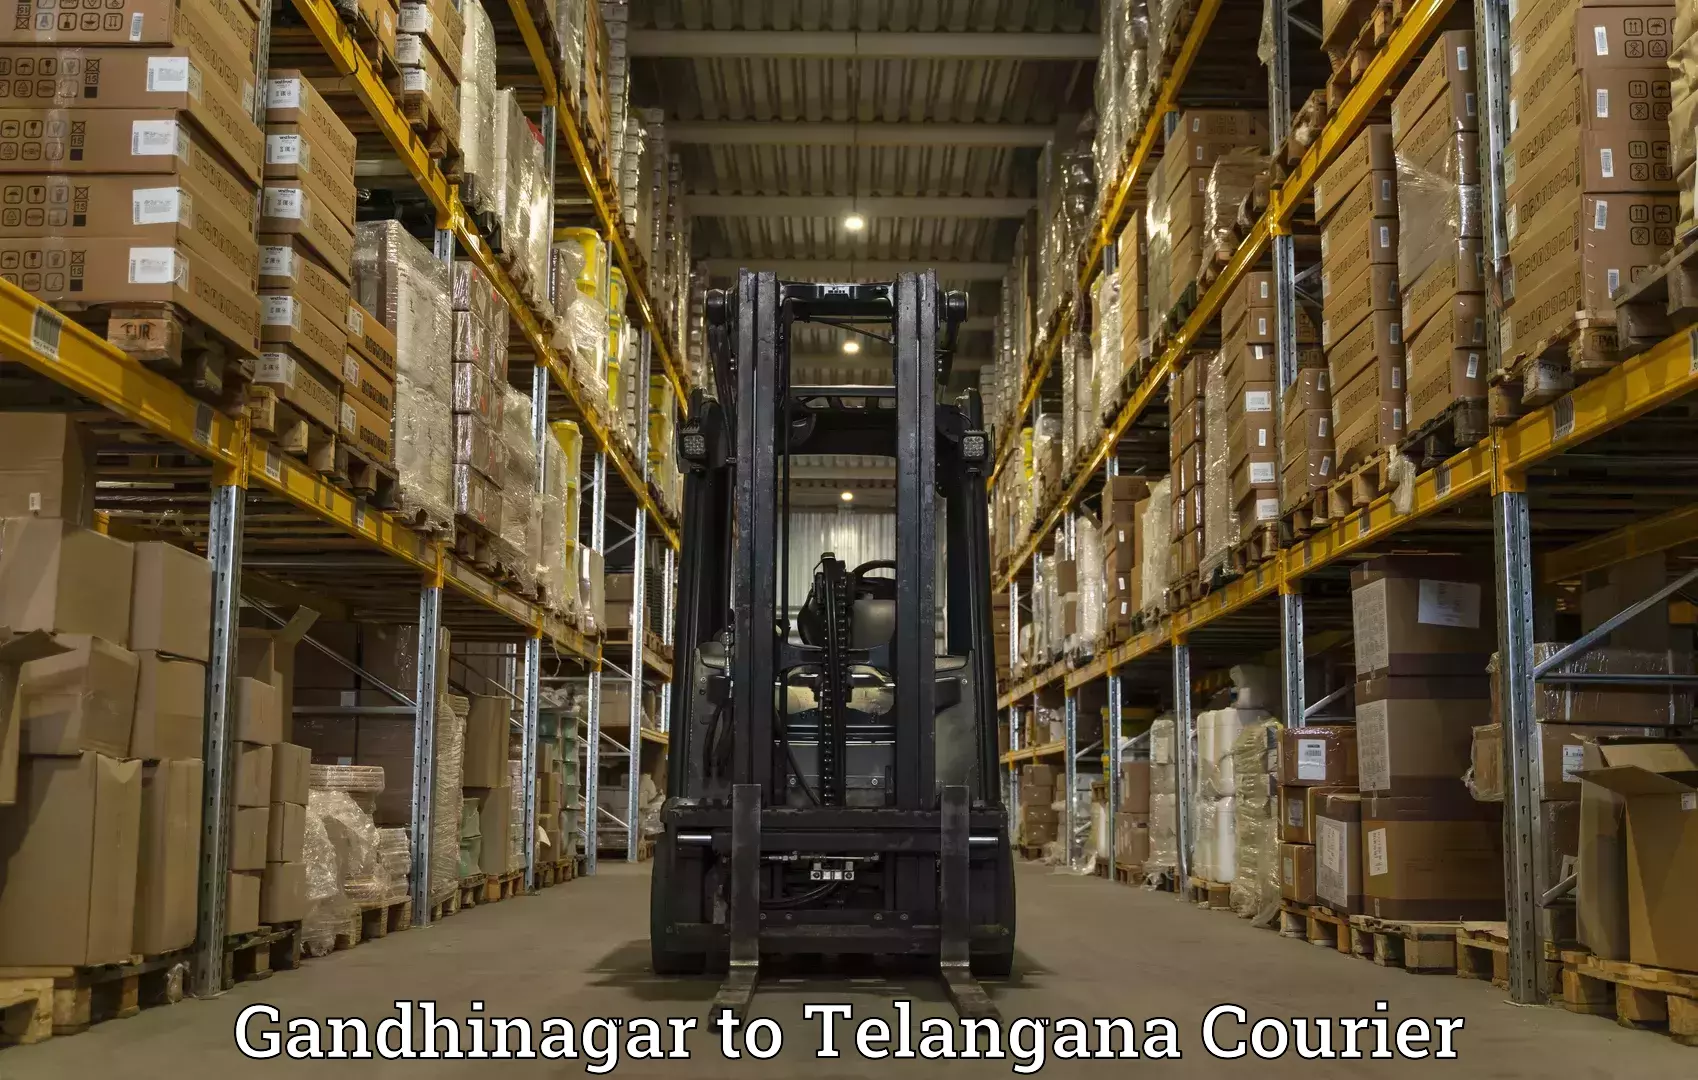 Express courier facilities in Gandhinagar to Achampet